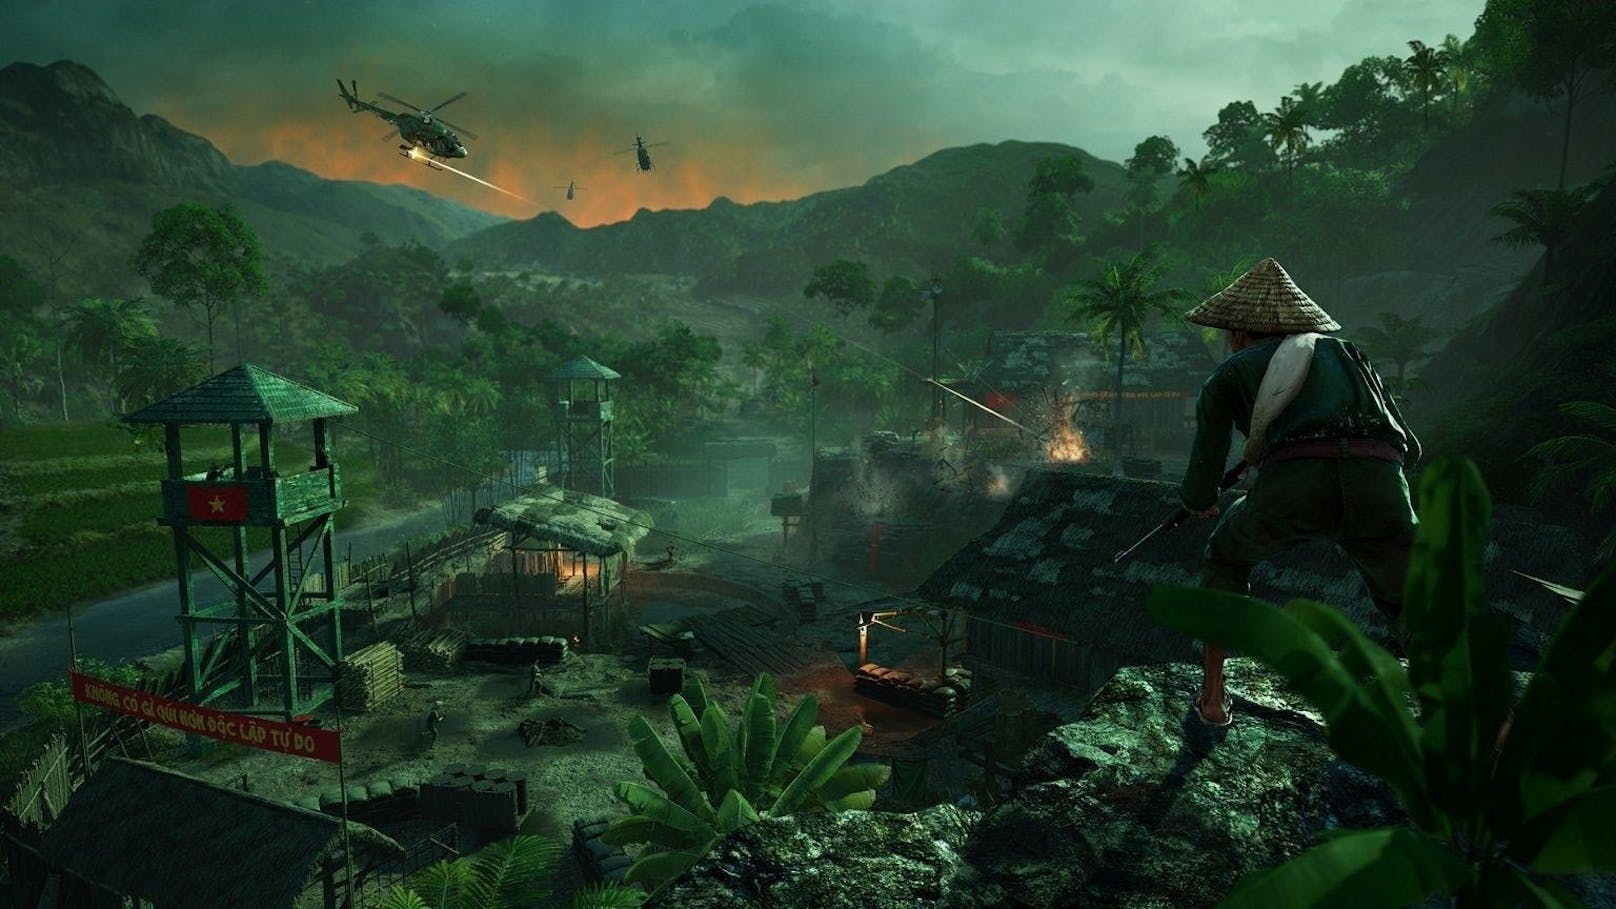 <b>28. Mai 2018:</b> Zuwachs für Far Cry 5! Ubisoft kündigte an, dass mit "Düstere Stunden" der erste DLC für Far Cry 5 auf allen Plattformen erscheinen wird. Der DLC führt den Spieler in die Vergangenheit, wo er als Hope Countys Wendell "Red" Redler versuchen wird, seine Truppenmitglieder im Vietnamkrieg vor den feindlichen Streitkräften zu retten. "Düstere Stunden" kann als eigenständiger DLC, als Teil des Far Cry 5 Season Pass, oder mit der Far Cry 5 Gold Edition erworben werden. 